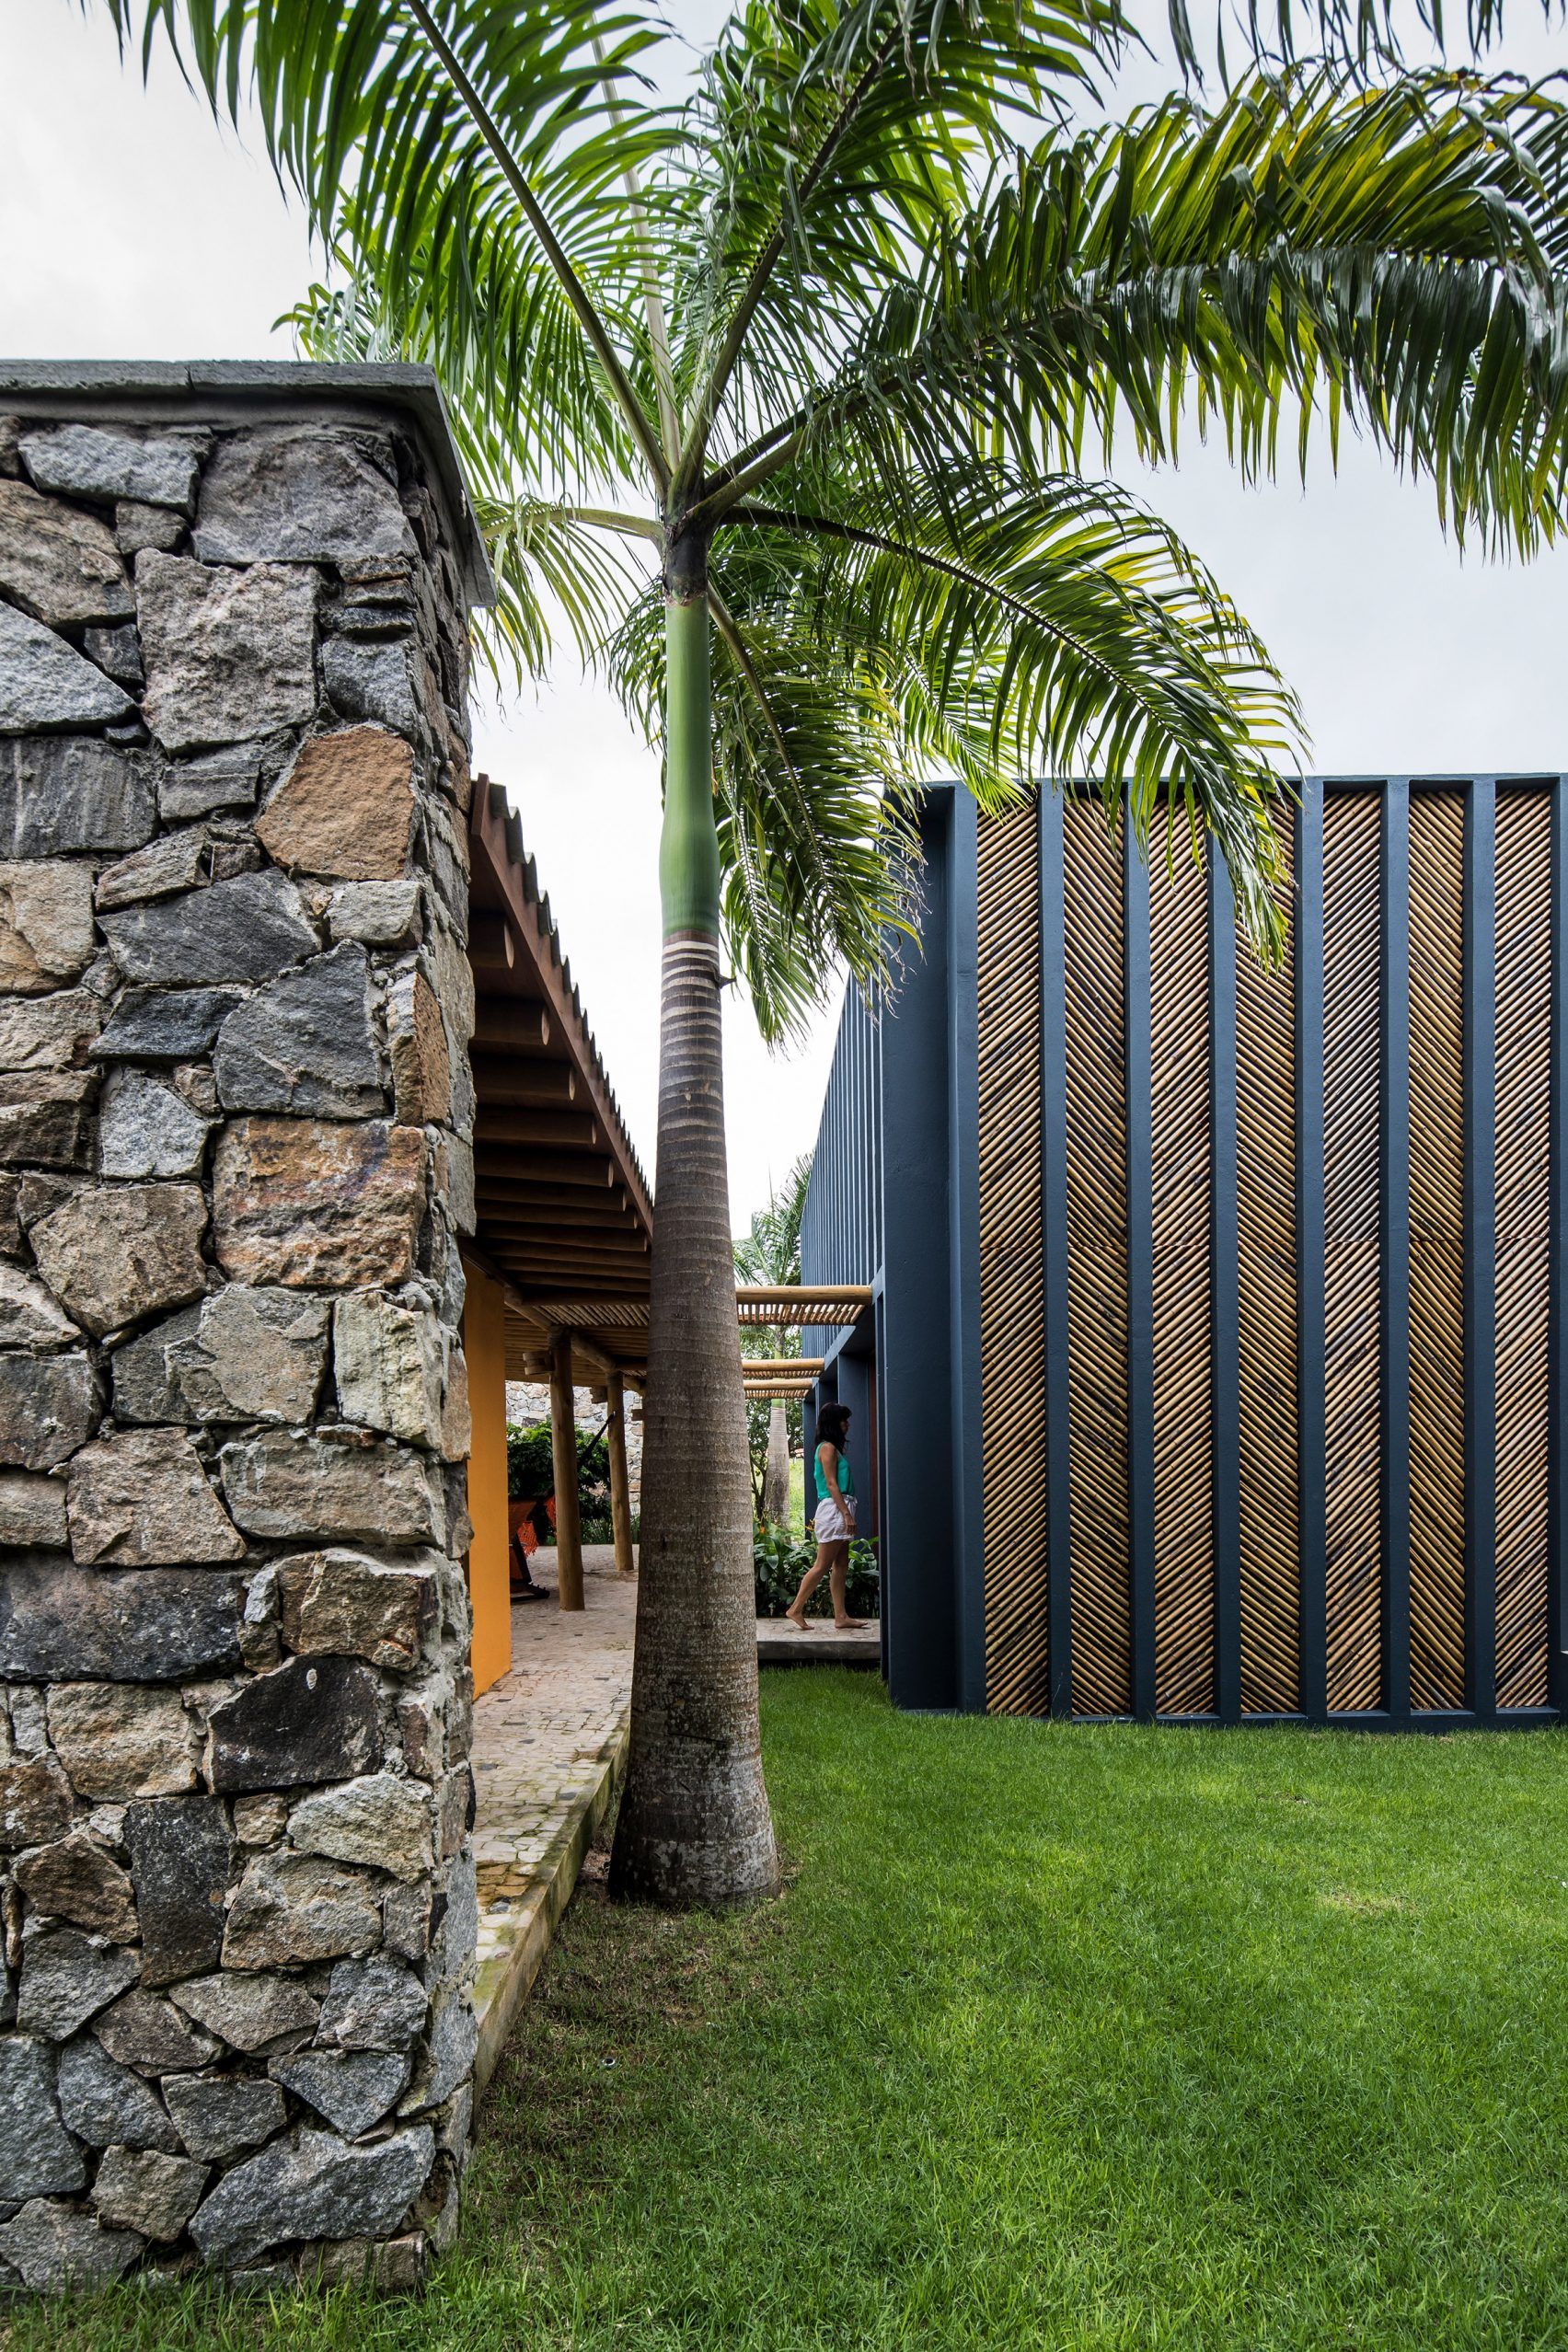 Intip 5 Desain Rumah dengan Material Bambu, Bisa Jadi Inspirasi Buatmu!